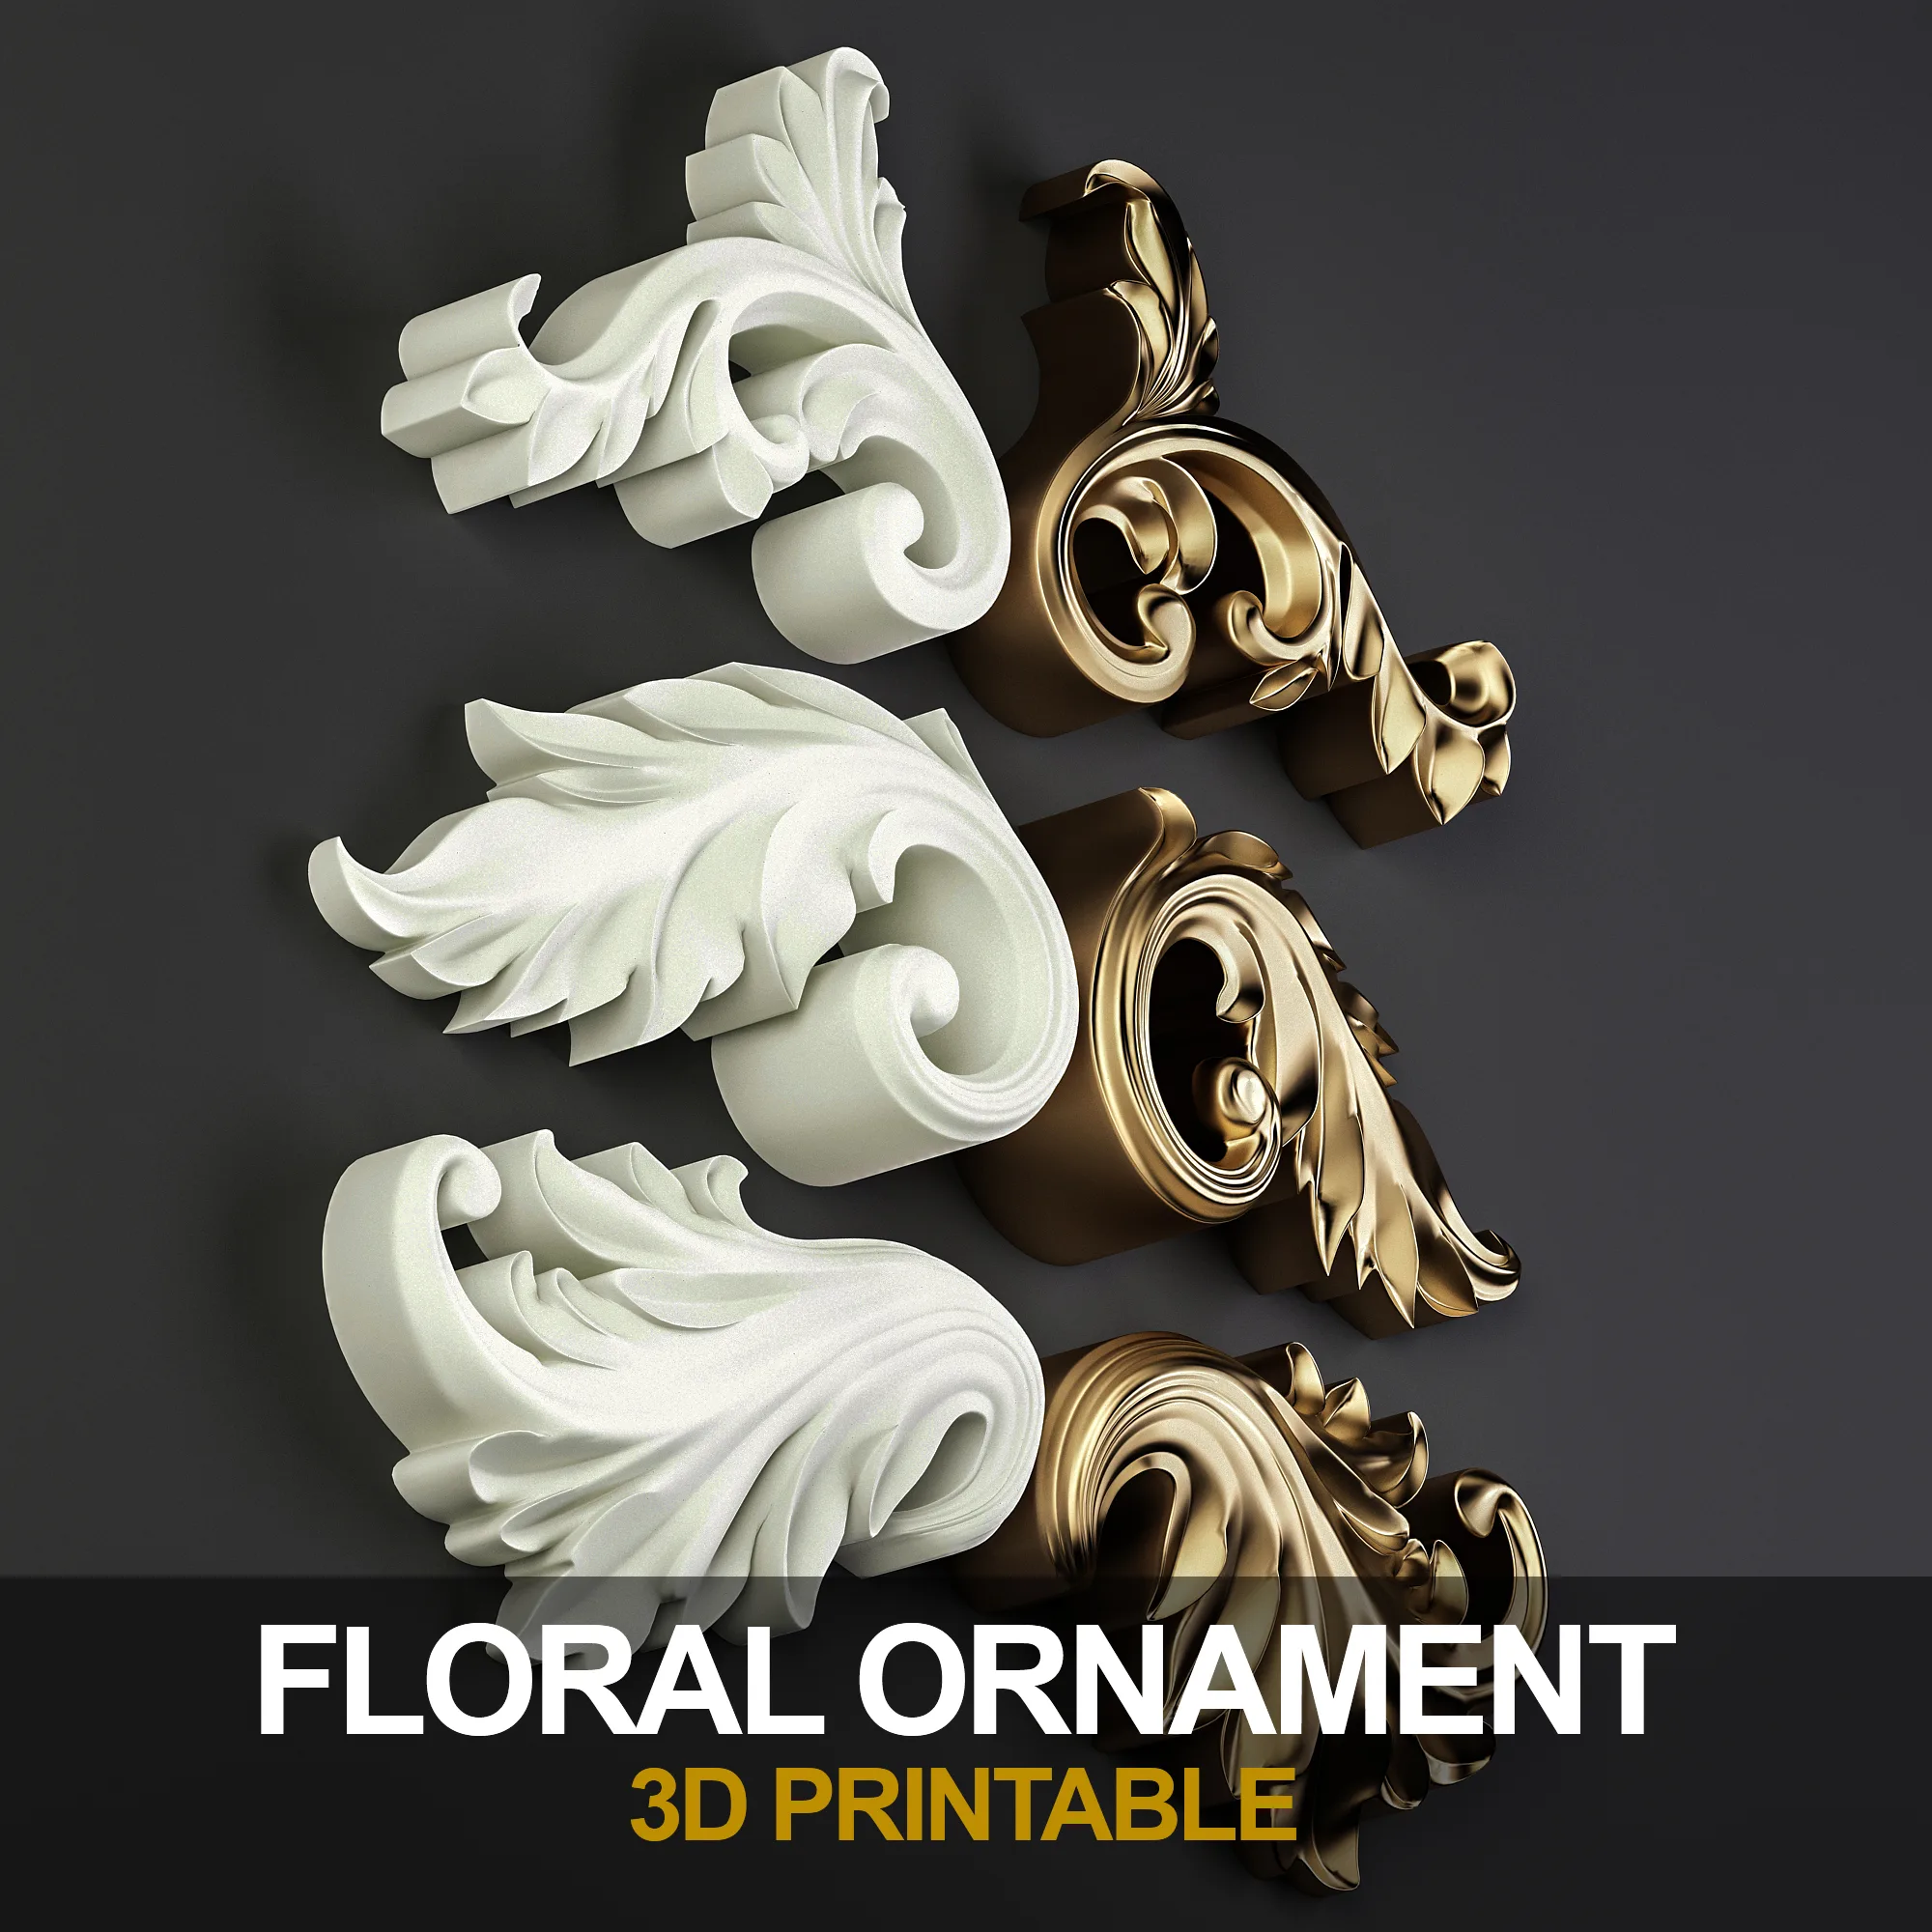 Decorative Floral Ornament (3D printable) 02